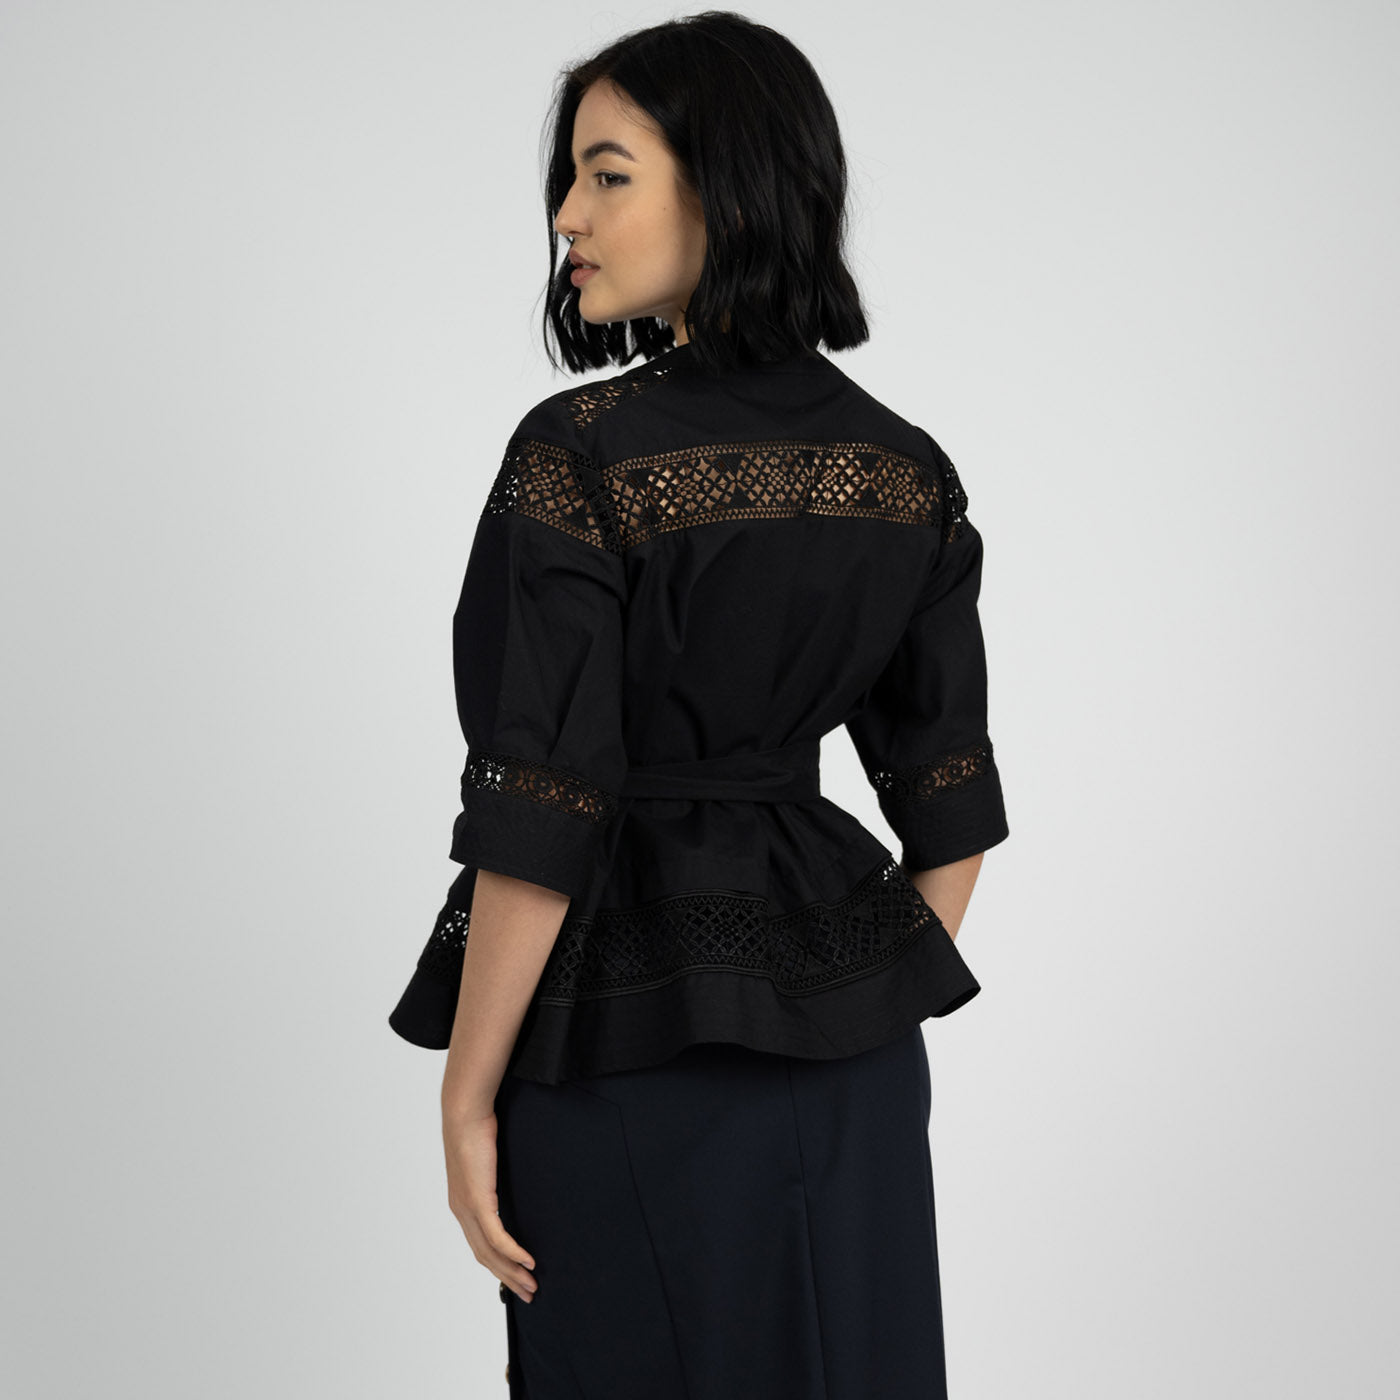 MARA Blouse: Stylish Black Lace Design